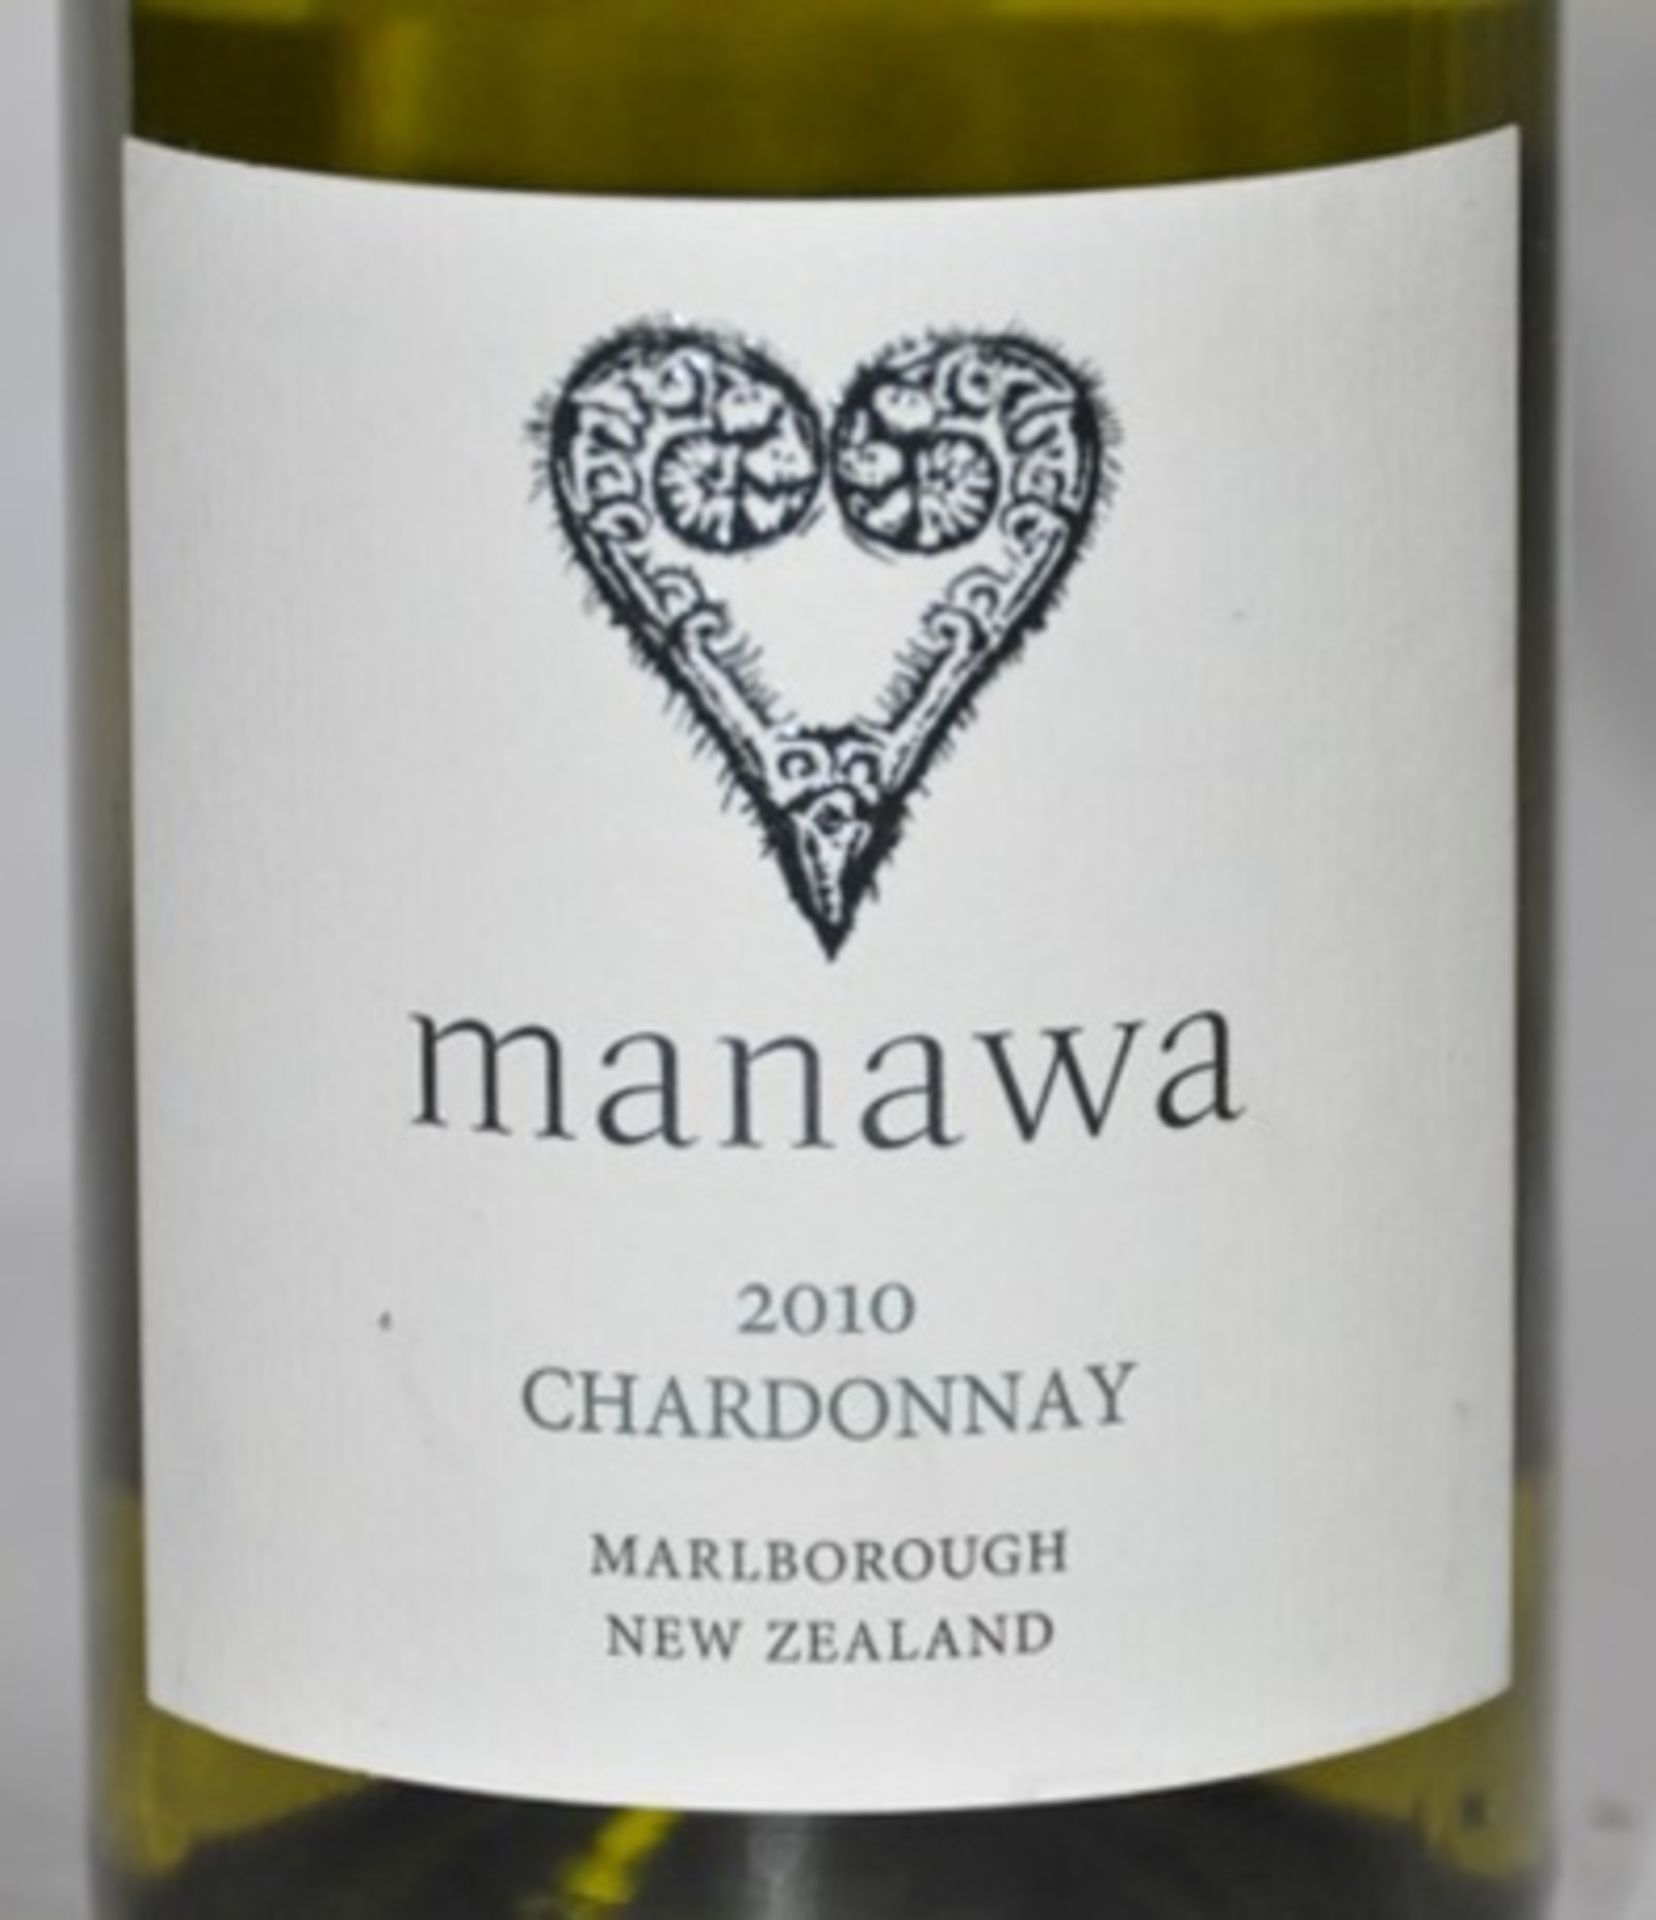 6 x Manawa Chardonnay, Marlborough, New Zealand – 2010 - Bottle Size 75cl - Volume 13.5% - Ref W1161 - Image 2 of 3